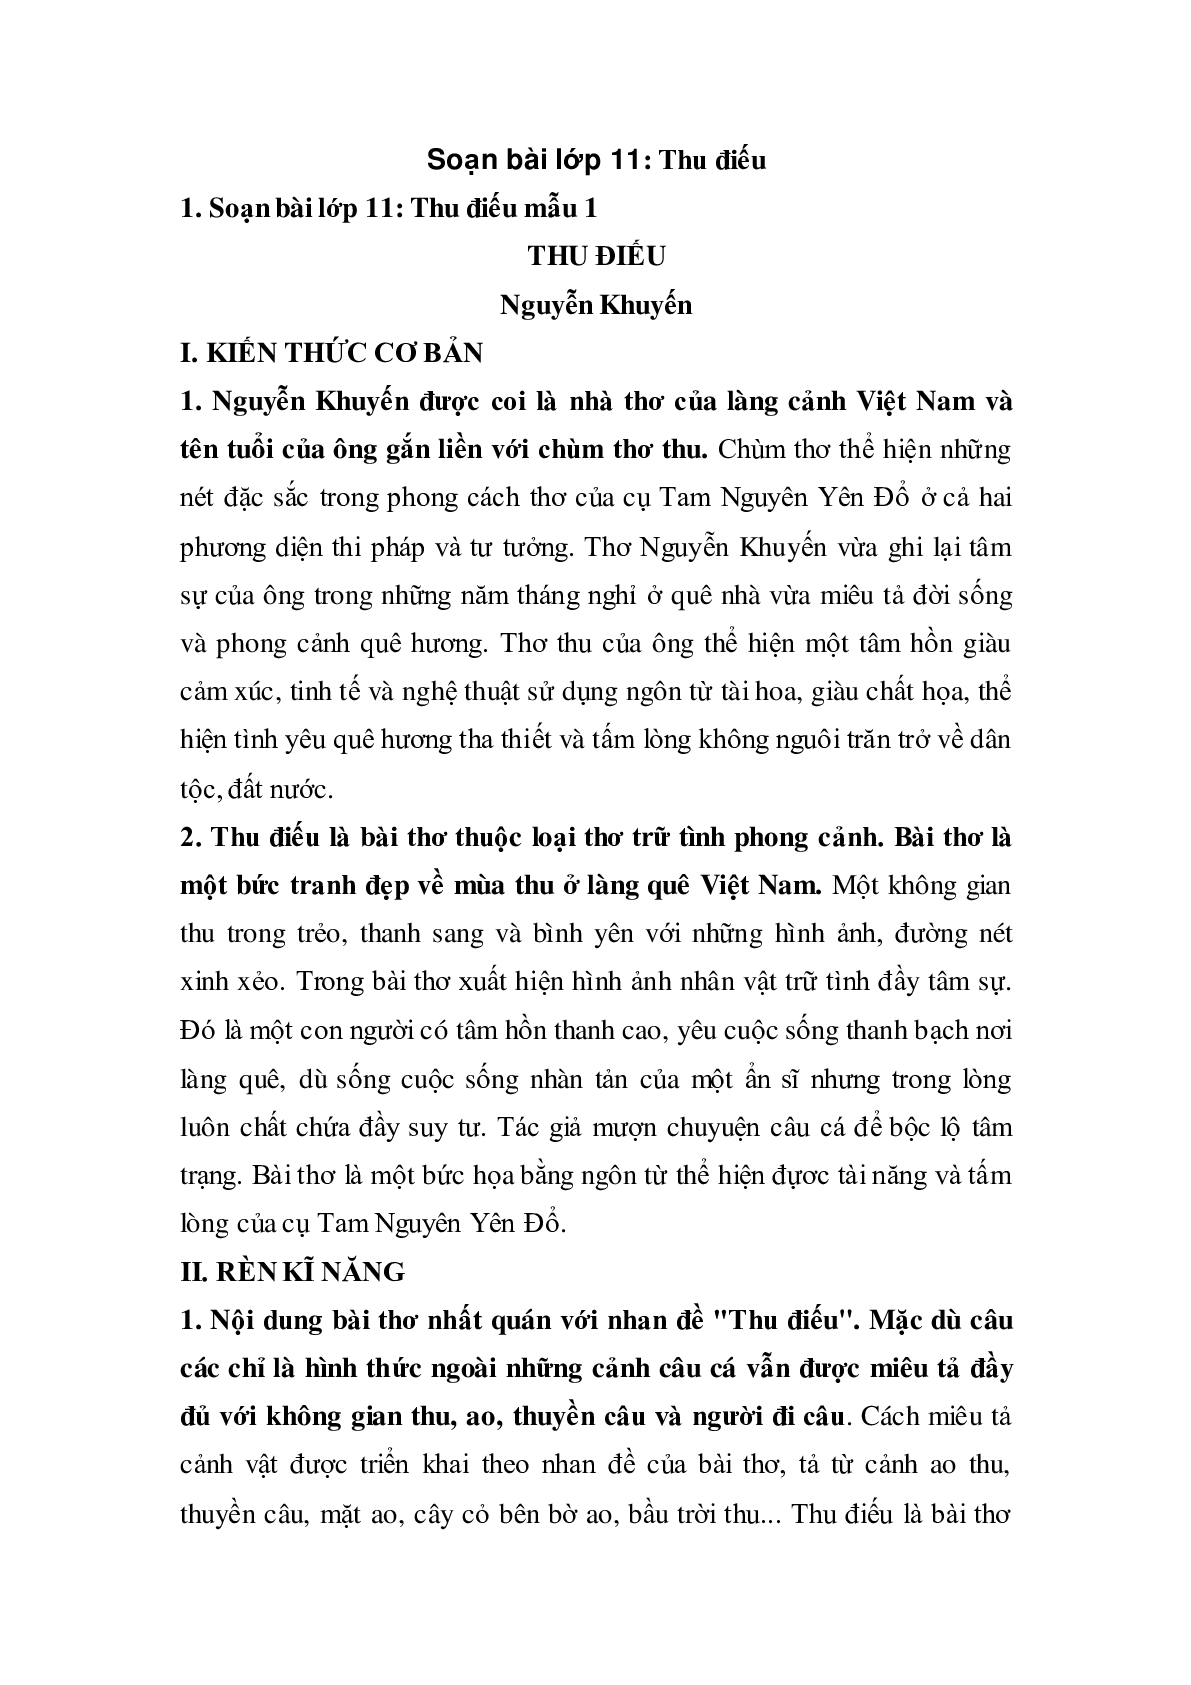 Soạn bài Thu điếu - ngắn nhất Soạn văn 11 (trang 1)